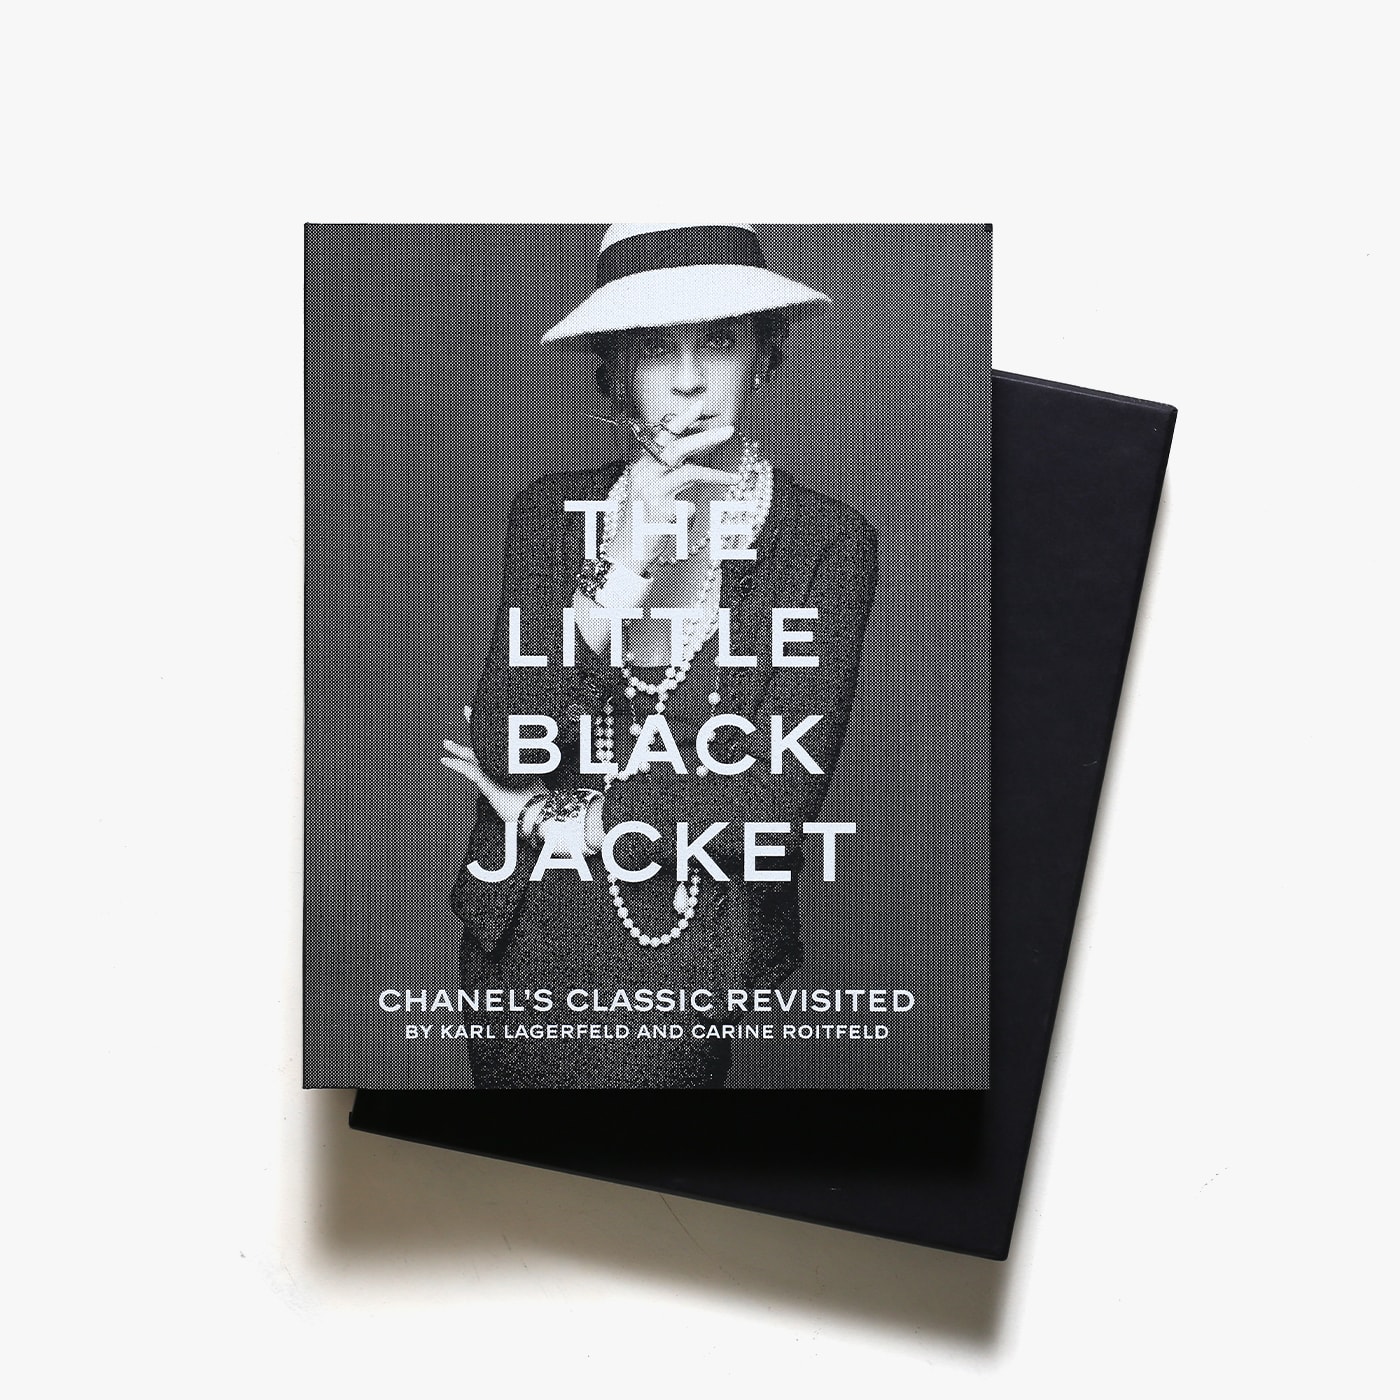 売上実績NO.1 シャネルの写真集「THE LITTLE BLACK JACKET」 アート 